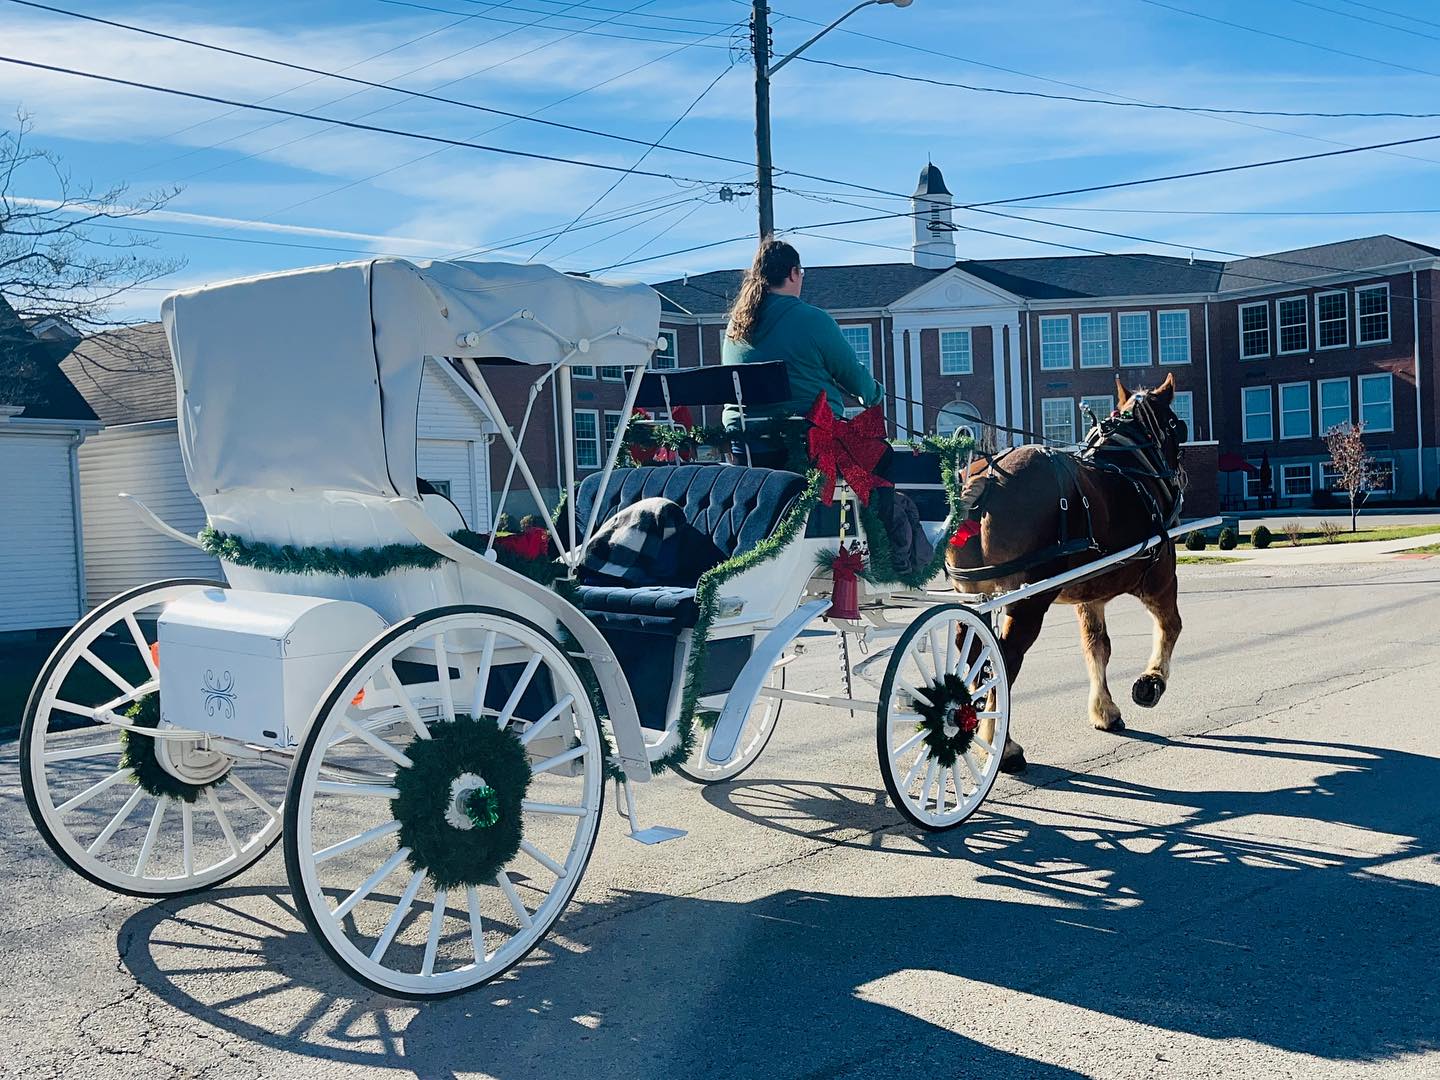 carriage rides in columbus ohio, carriage rides columbus ohio, horse carriage for wedding, 
horse for wedding, 
wedding carriage, 
horse wedding carriage
ohio